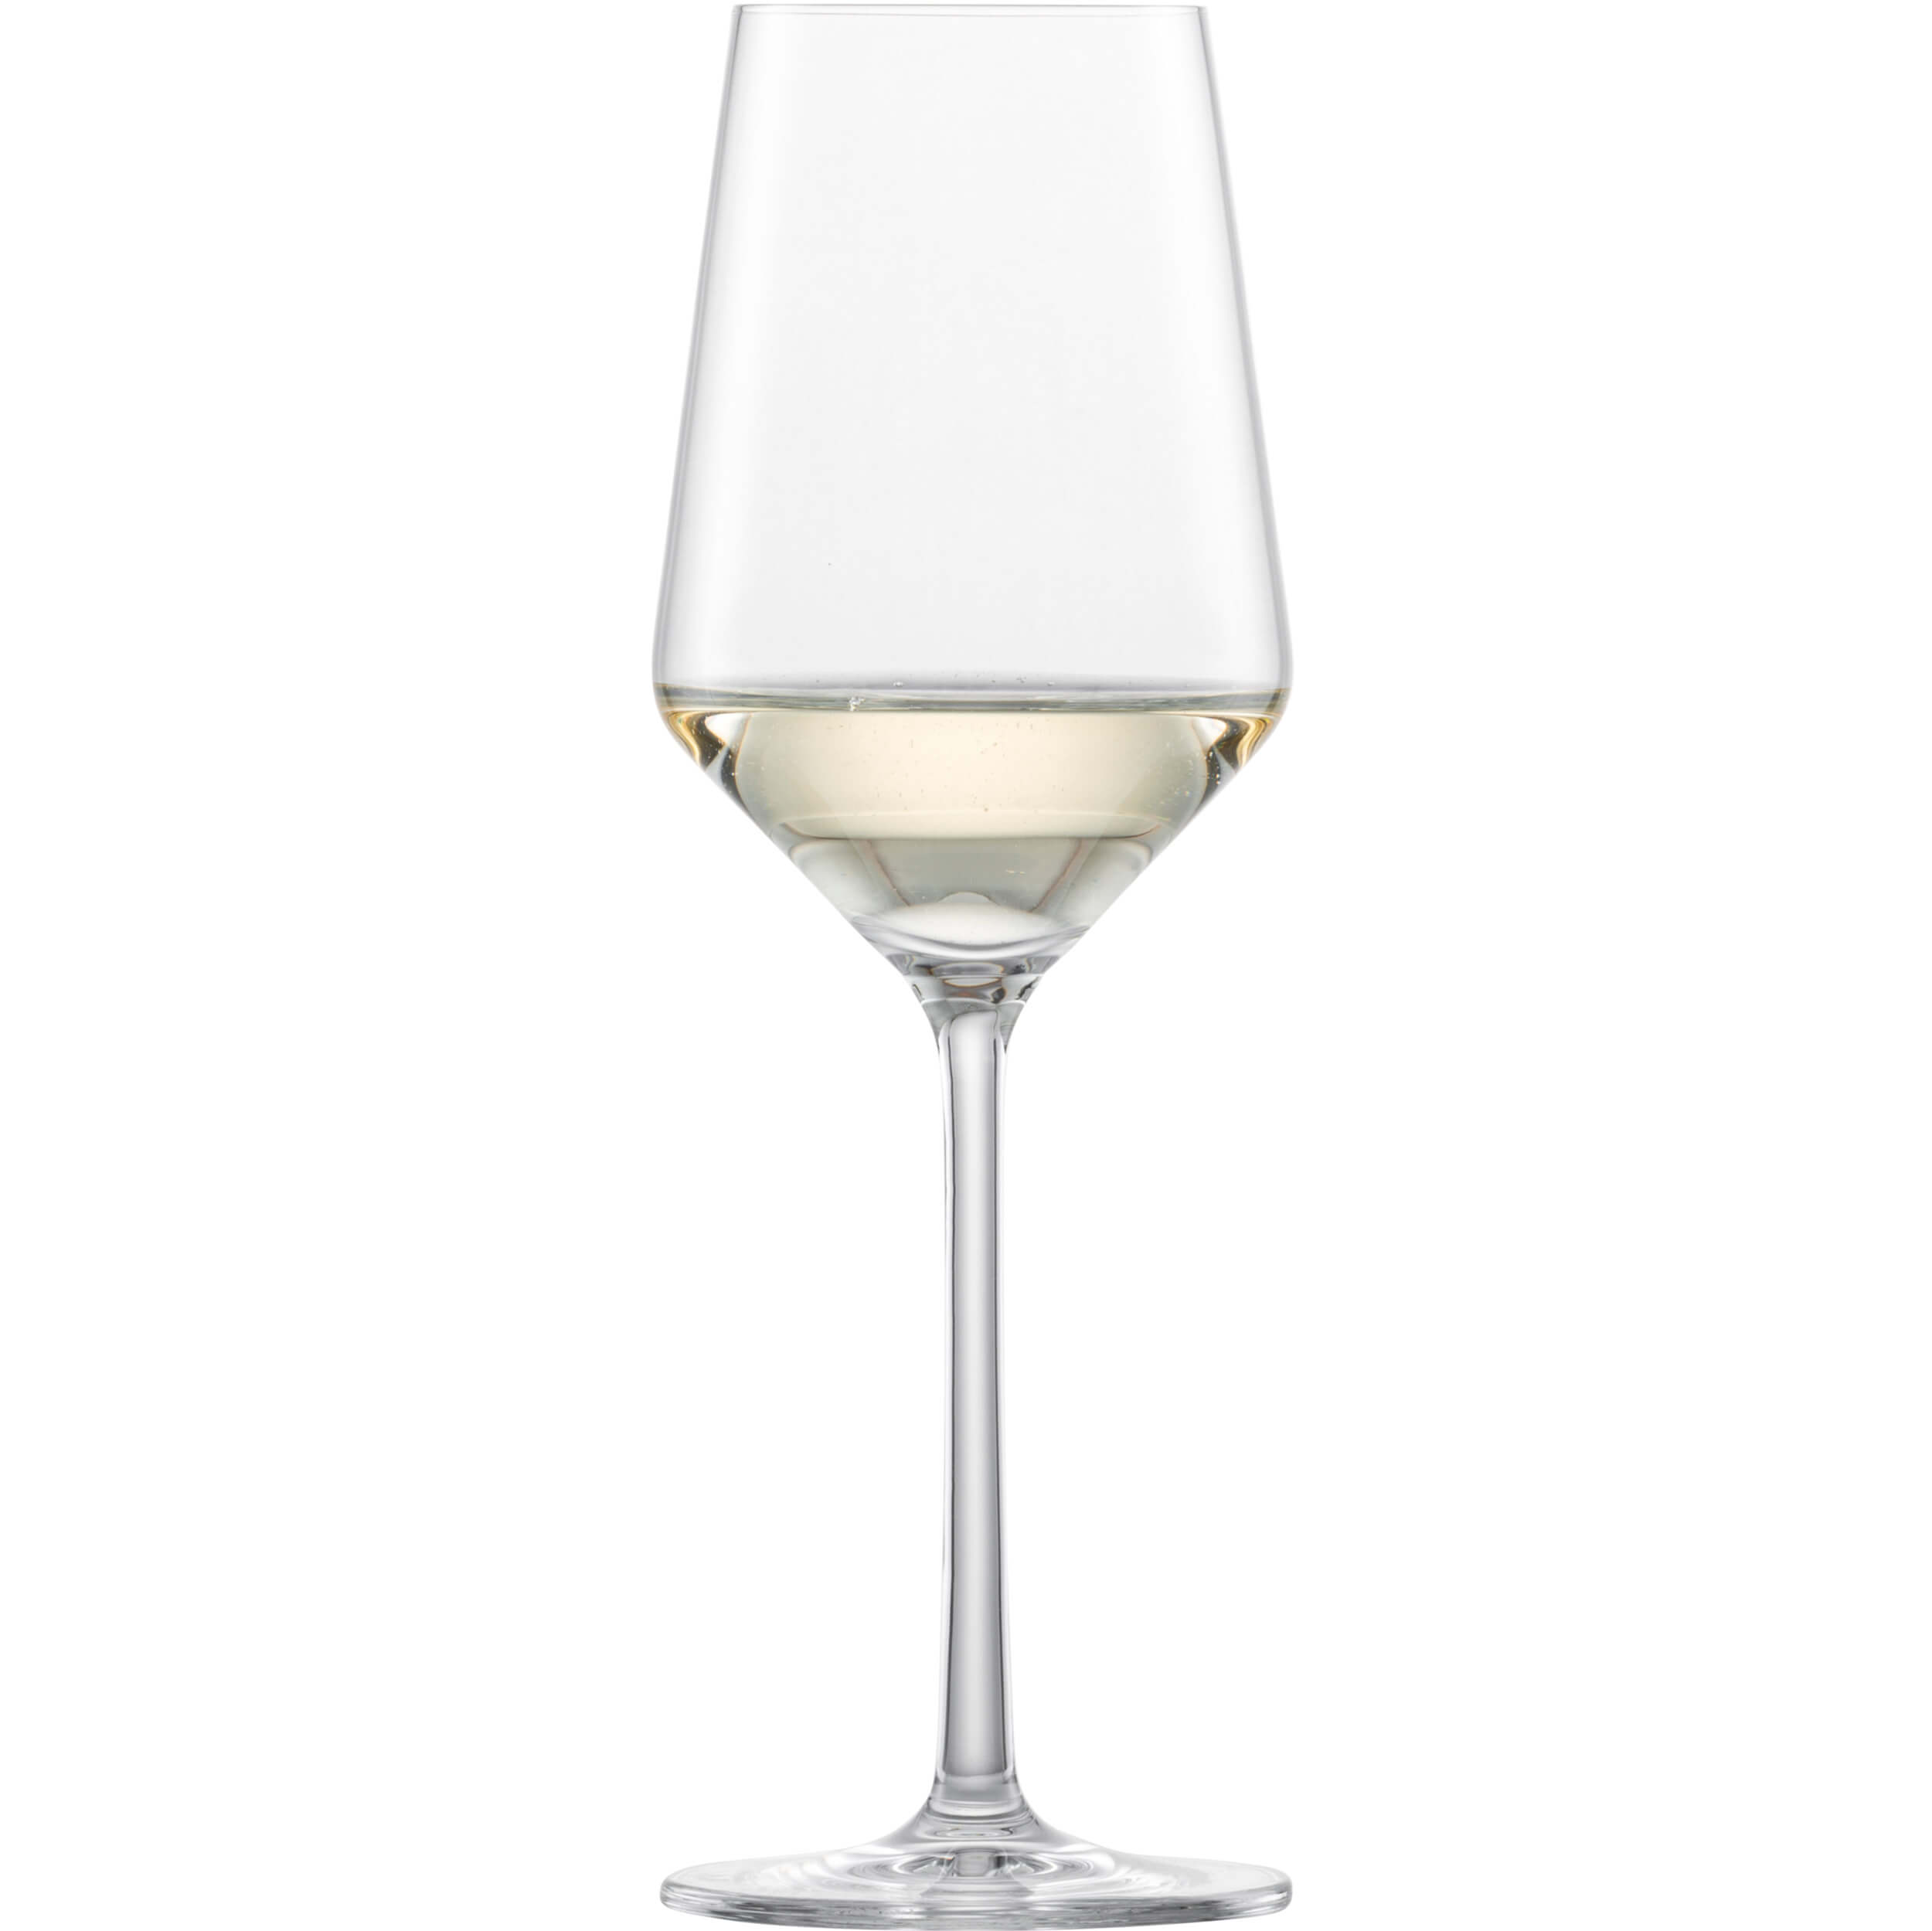 Weißweinglas Riesling Belfesta, Zwiesel Glas - 300ml, 0,1l Eiche (6 Stk.)